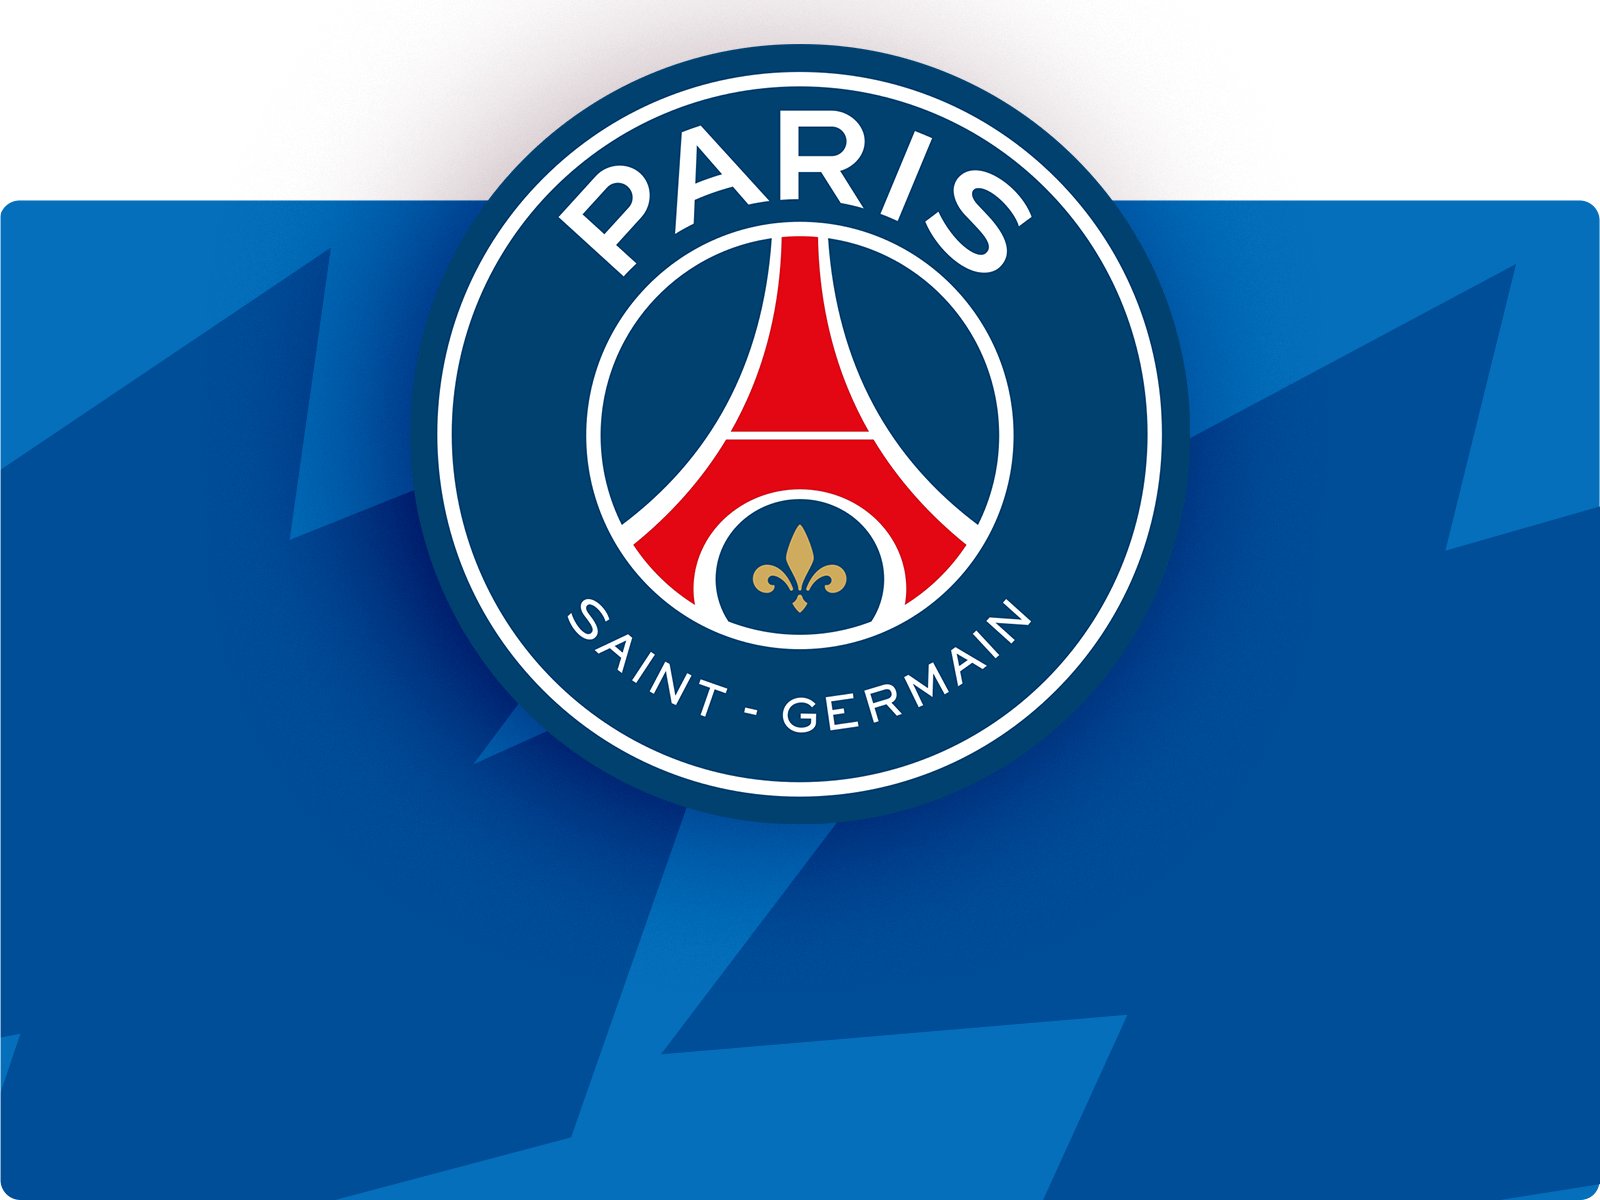 Paris Saint Germain Football Club – Character.com